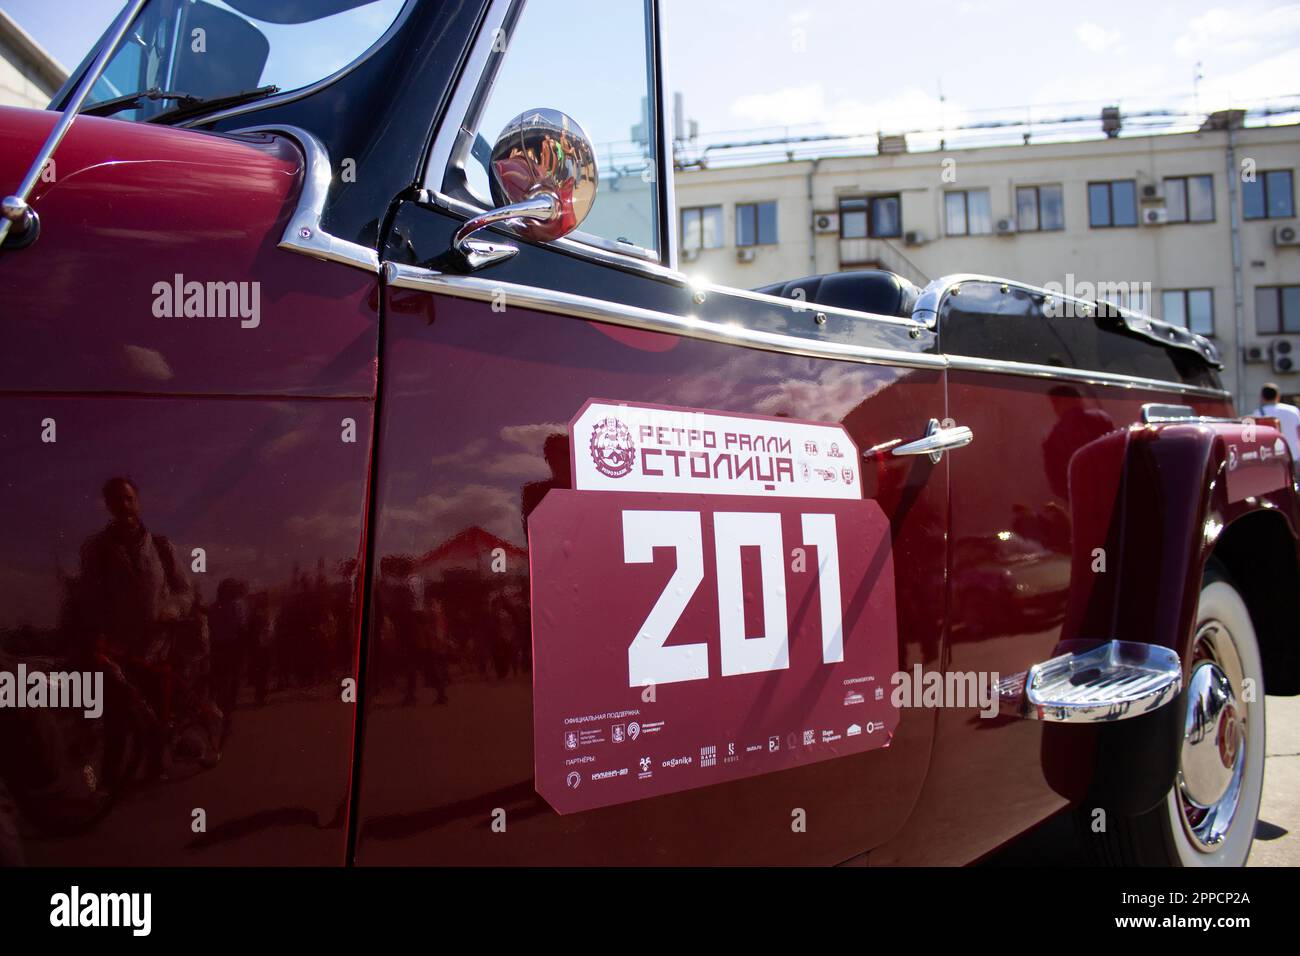 Un numéro marque la place de la voiture rétro lors d'un rallye de voitures rétro à Moscou, en Russie. Plus d'une centaine de voitures rétro ont participé au rallye rétro 'Capital' ("Stolitsa") 2023 à Moscou, en Russie, sur 23 avril 2023. Cet événement ouvre une série de compétitions officielles de la saison 8th de la Fédération de l'automobile russe coupe en rallye avec des voitures classiques. Des marques soviétiques légendaires telles que « Volga », « Moskvich » et « Zhiguli », ainsi que des marques mondialement connues telles que Rolls Royce, Bentley, Mercedes, Porsche, Jaguar, Et d'autres, ont participé au rallye automobile à Moscou en 2023. Plus d'une centaine de voitures rétro y ont participé Banque D'Images